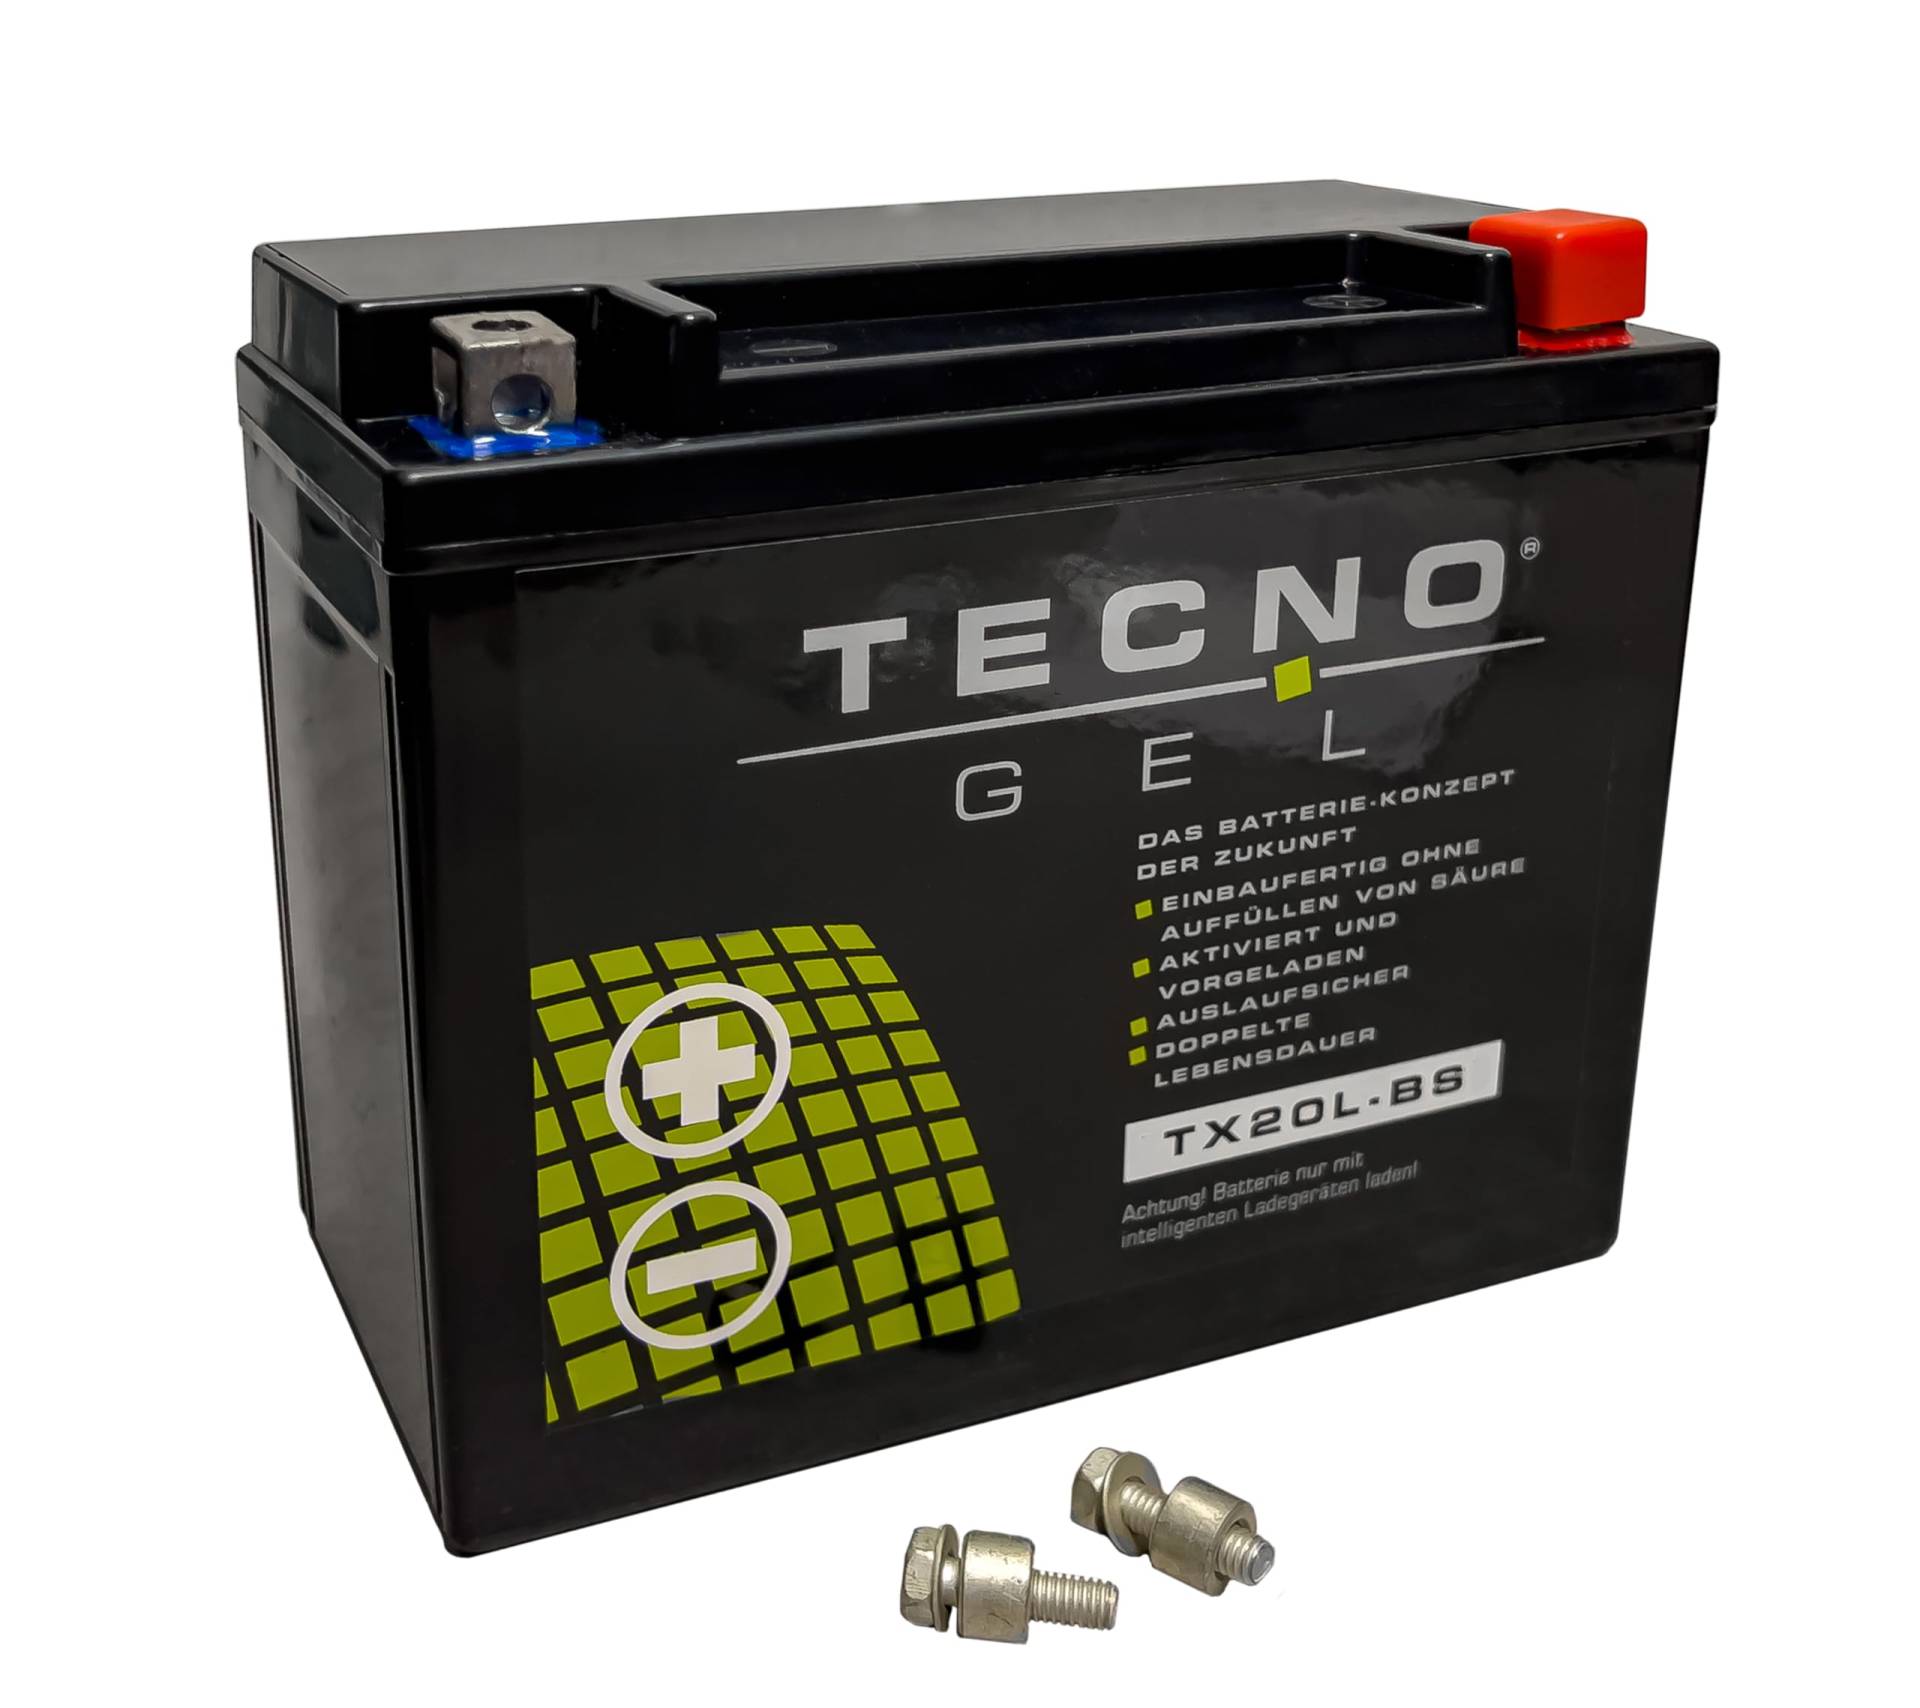 TECNO-GEL Motorrad-Batterie für YTX20L-BS für TRIUMPH Thunderbird 1600/1700 m/o. ABS 2009-2018, 12V Gel-Batterie 20Ah (DIN 82000), 175x87x155 mm von Wirth-Federn